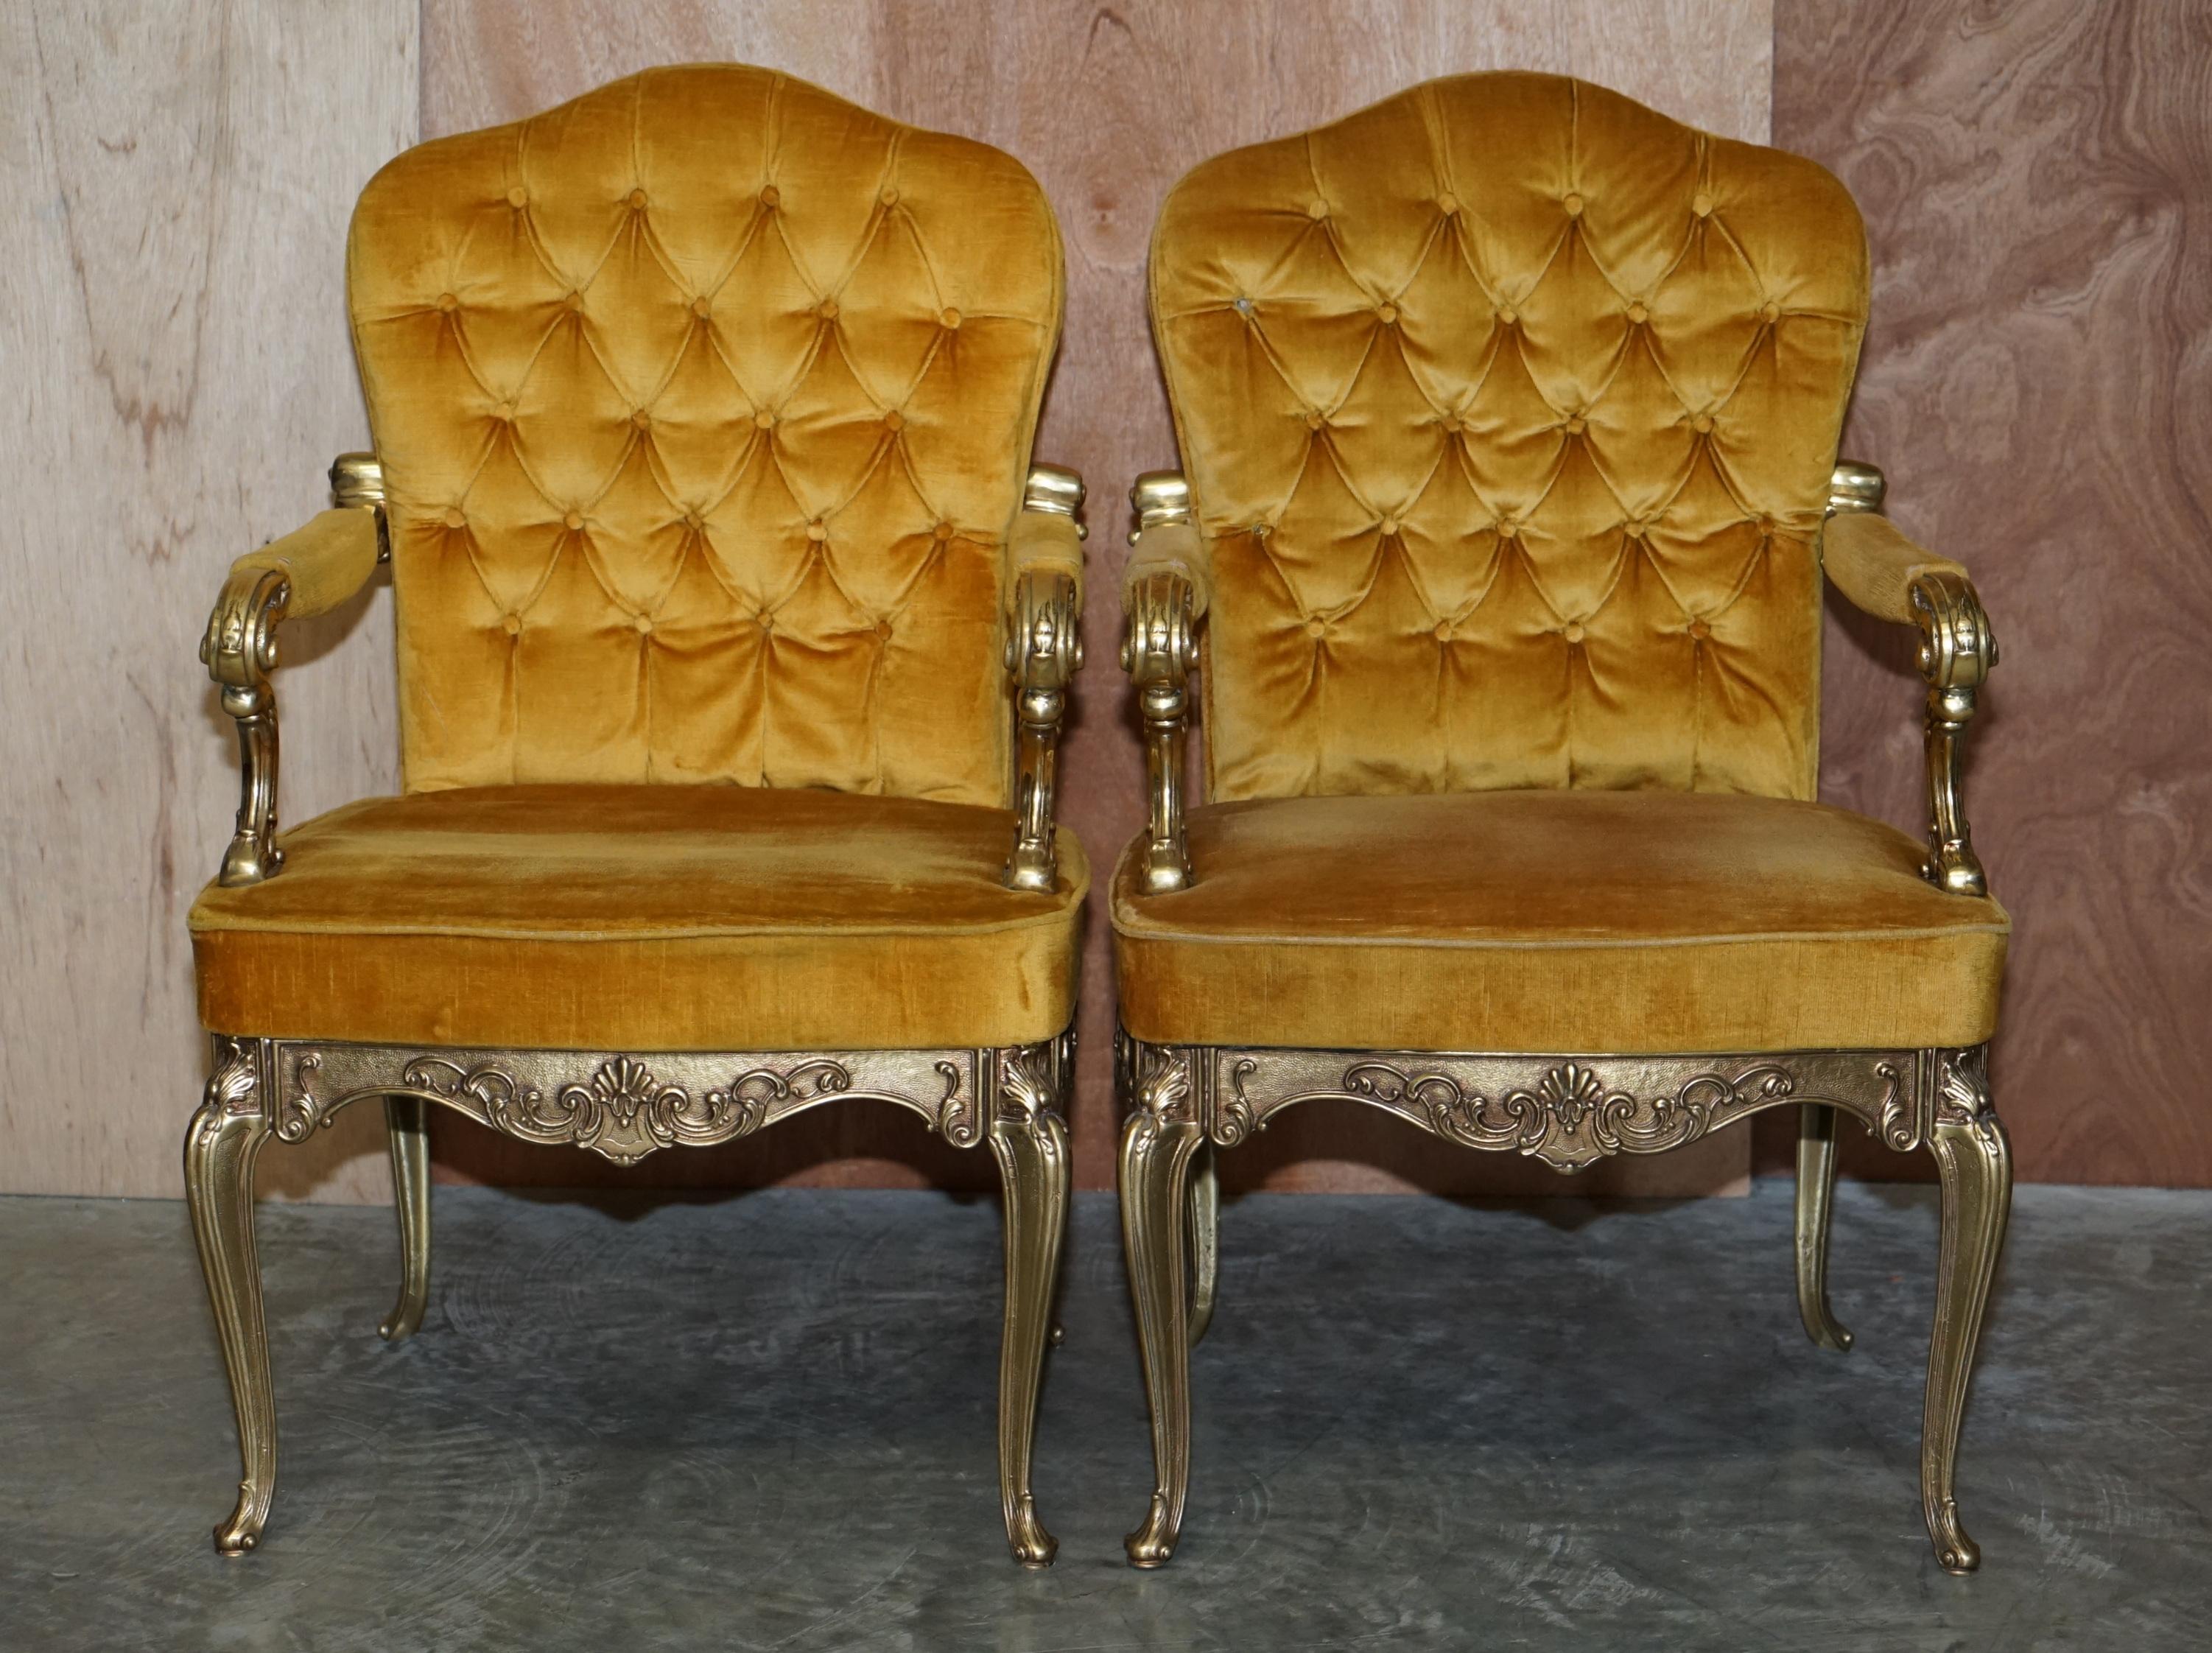 Wir freuen uns, dieses atemberaubende, sammelwürdige Paar originaler Hollywood-Regency-Stühle aus Messing von Orsenigo Italy zum Verkauf anzubieten

Ein sehr gut aussehendes und dekoratives Paar mit verschnörkelten Messingrahmen, die rundum schön